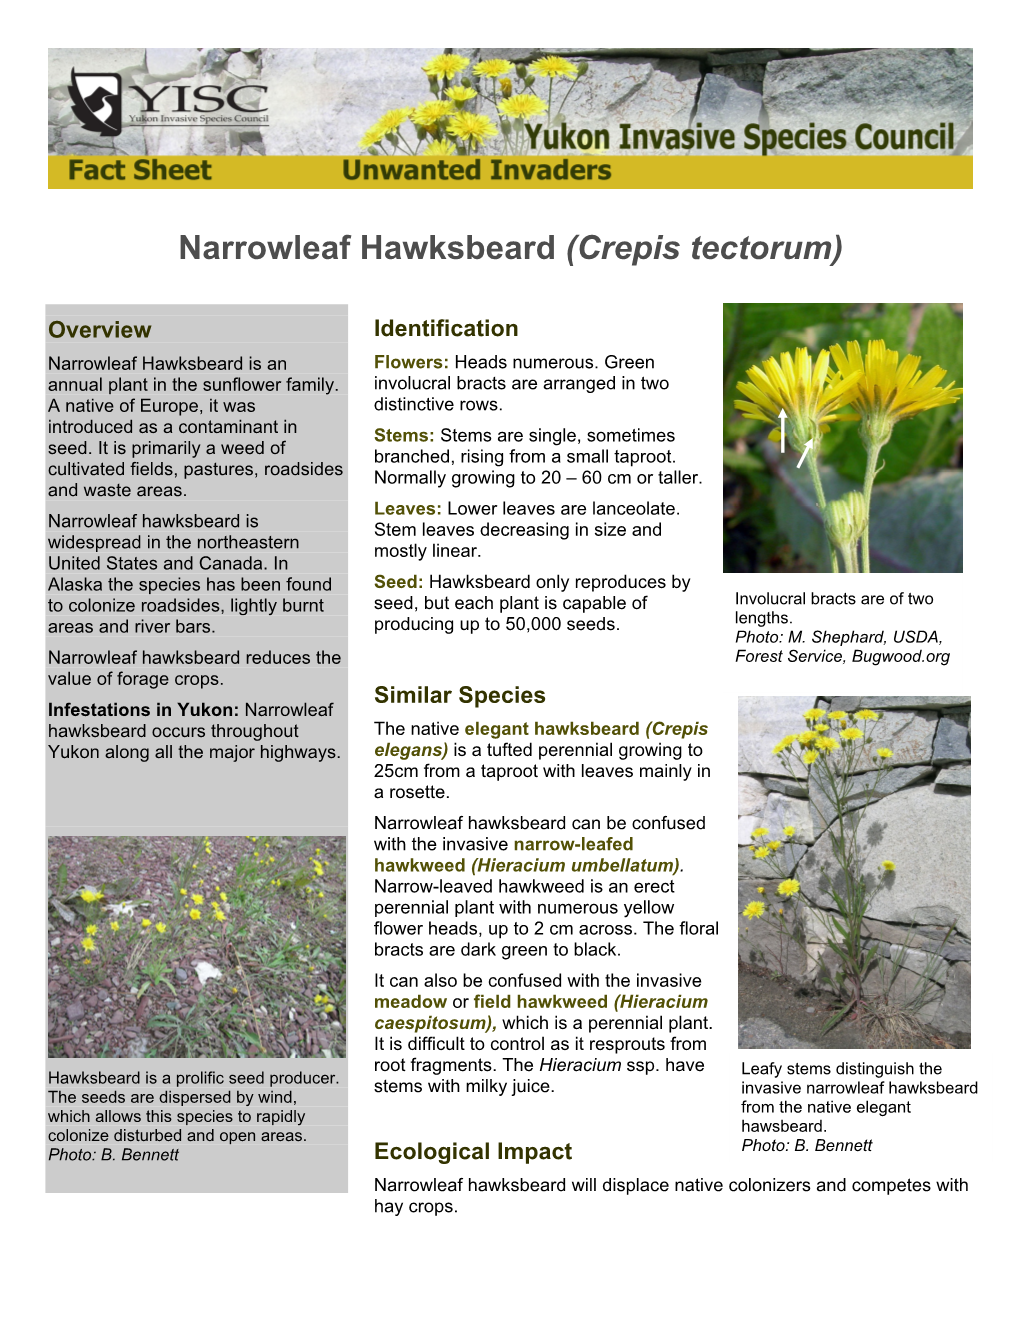 Narrowleaf Hawksbeard (Crepis Tectorum)